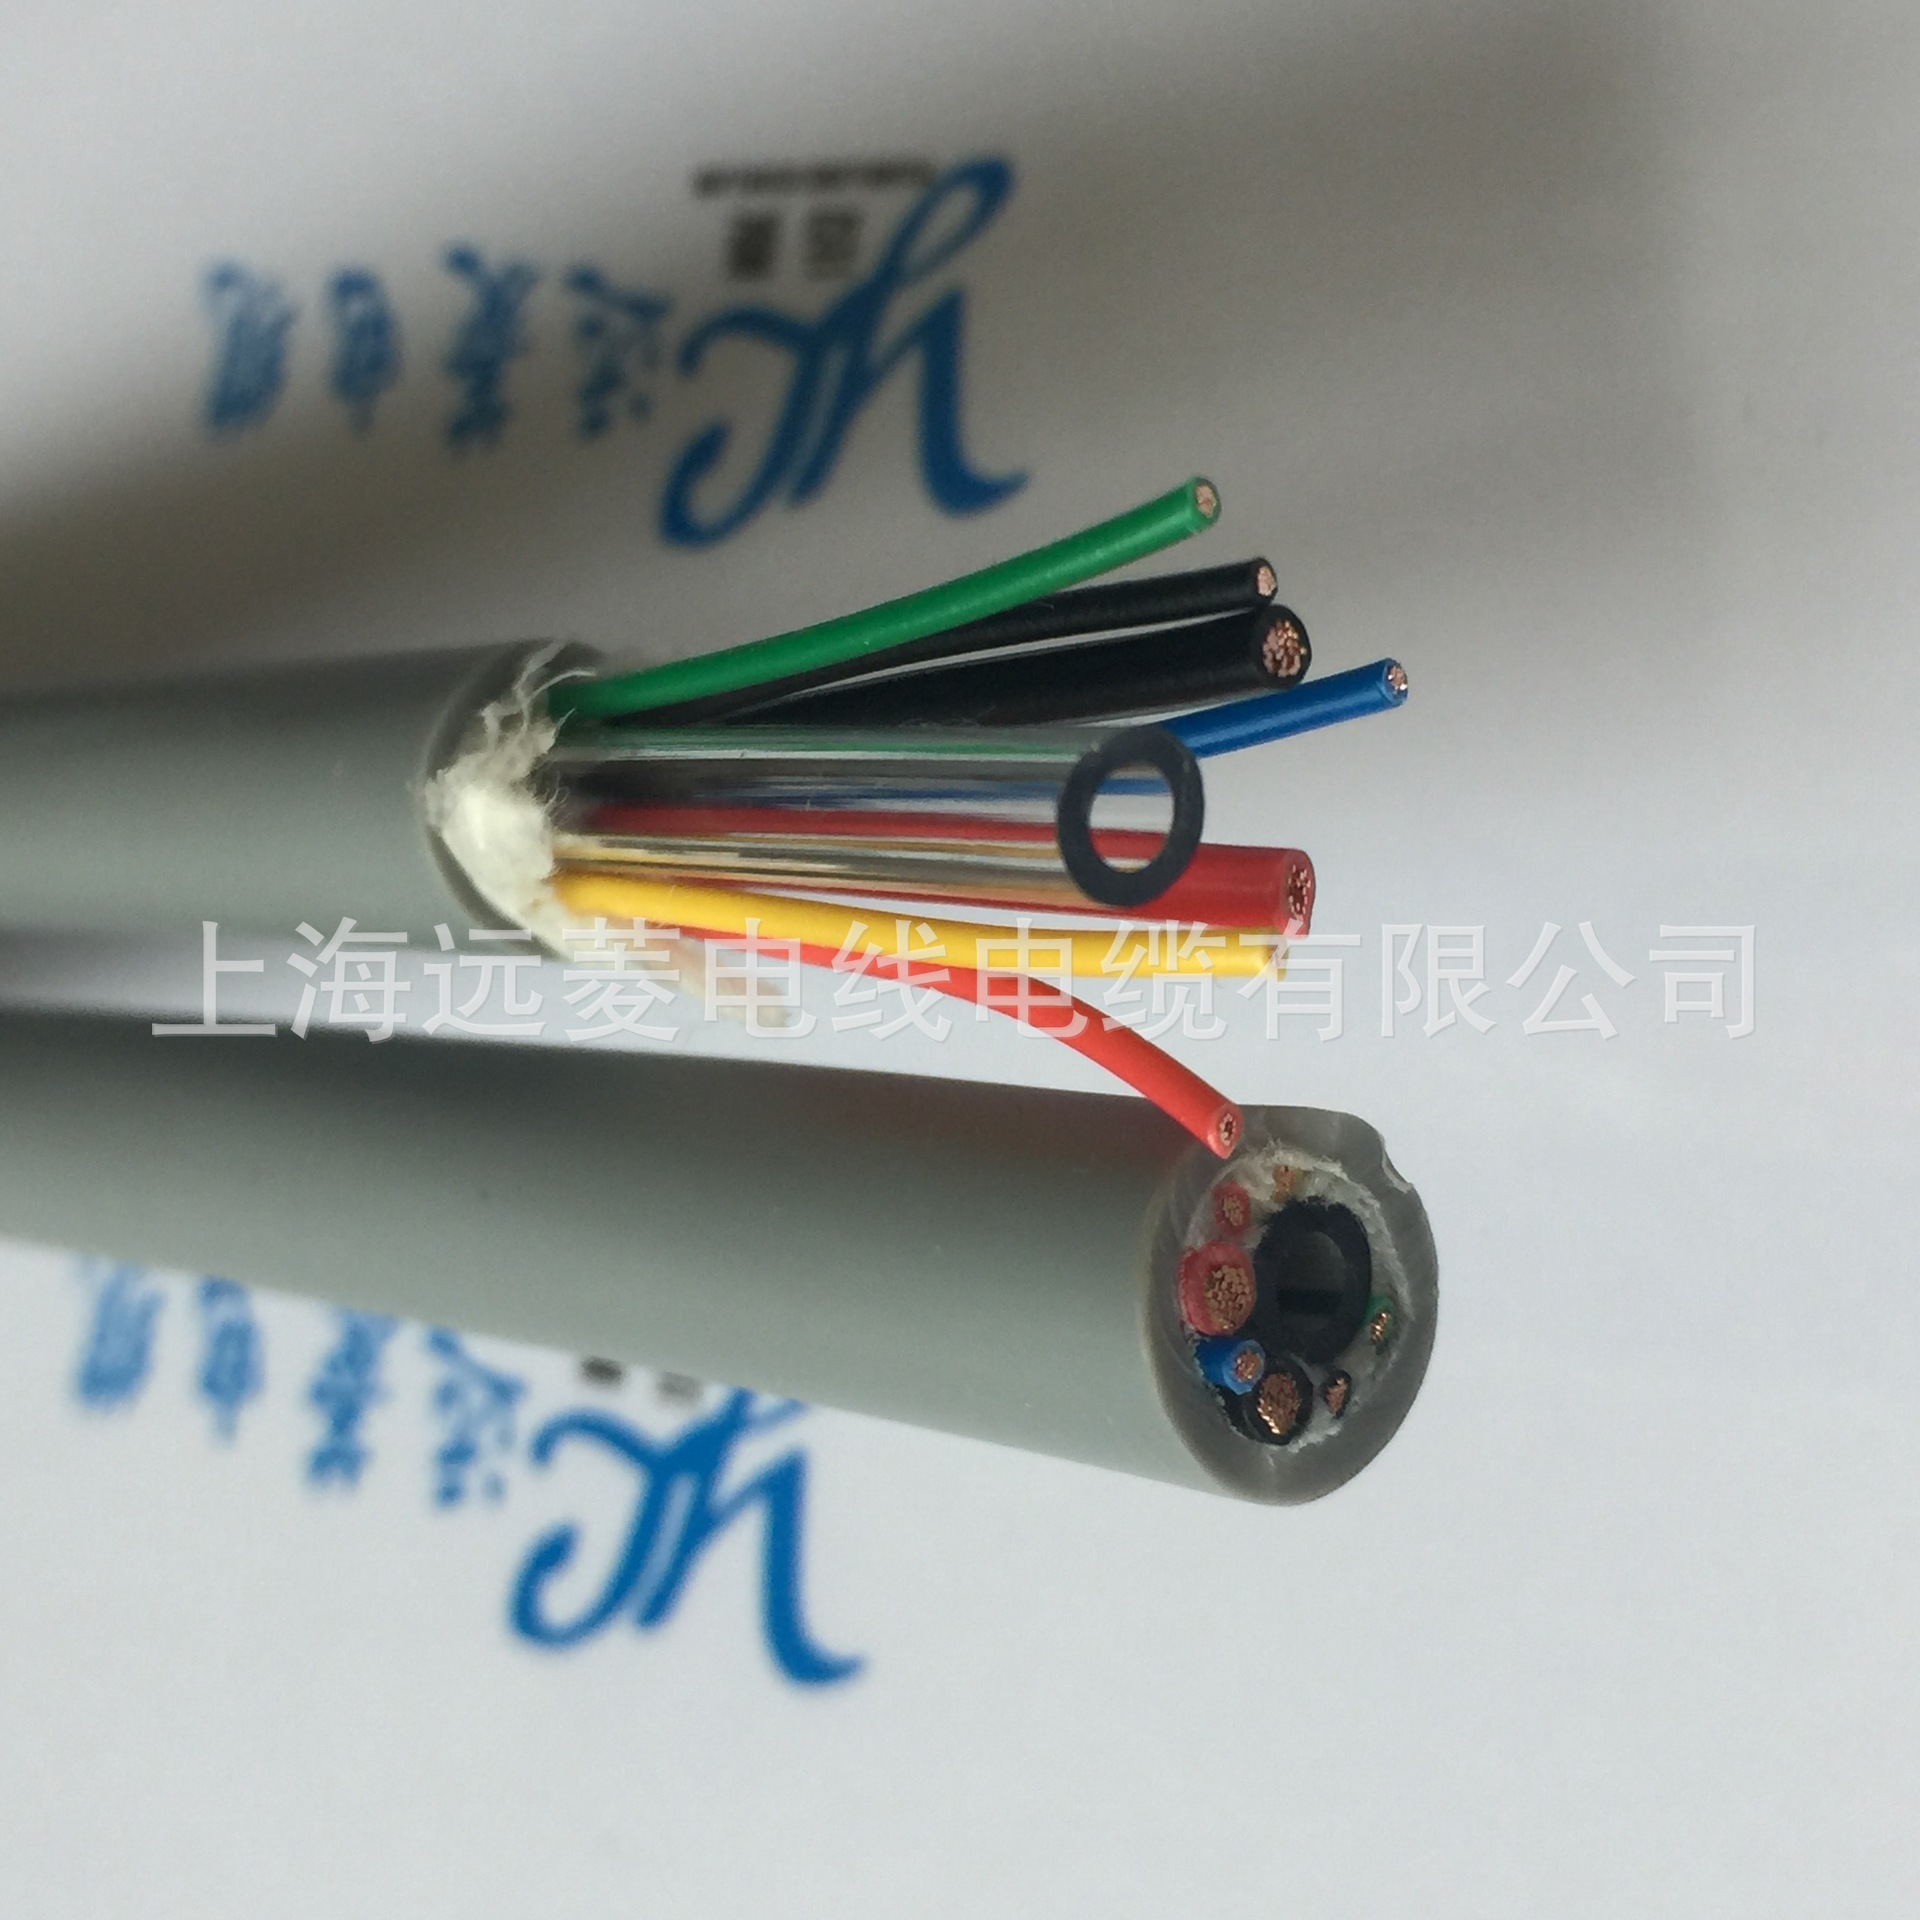 厂家直销 导气管电缆 医疗美容导气电缆 通气电缆 柔软导气管电缆